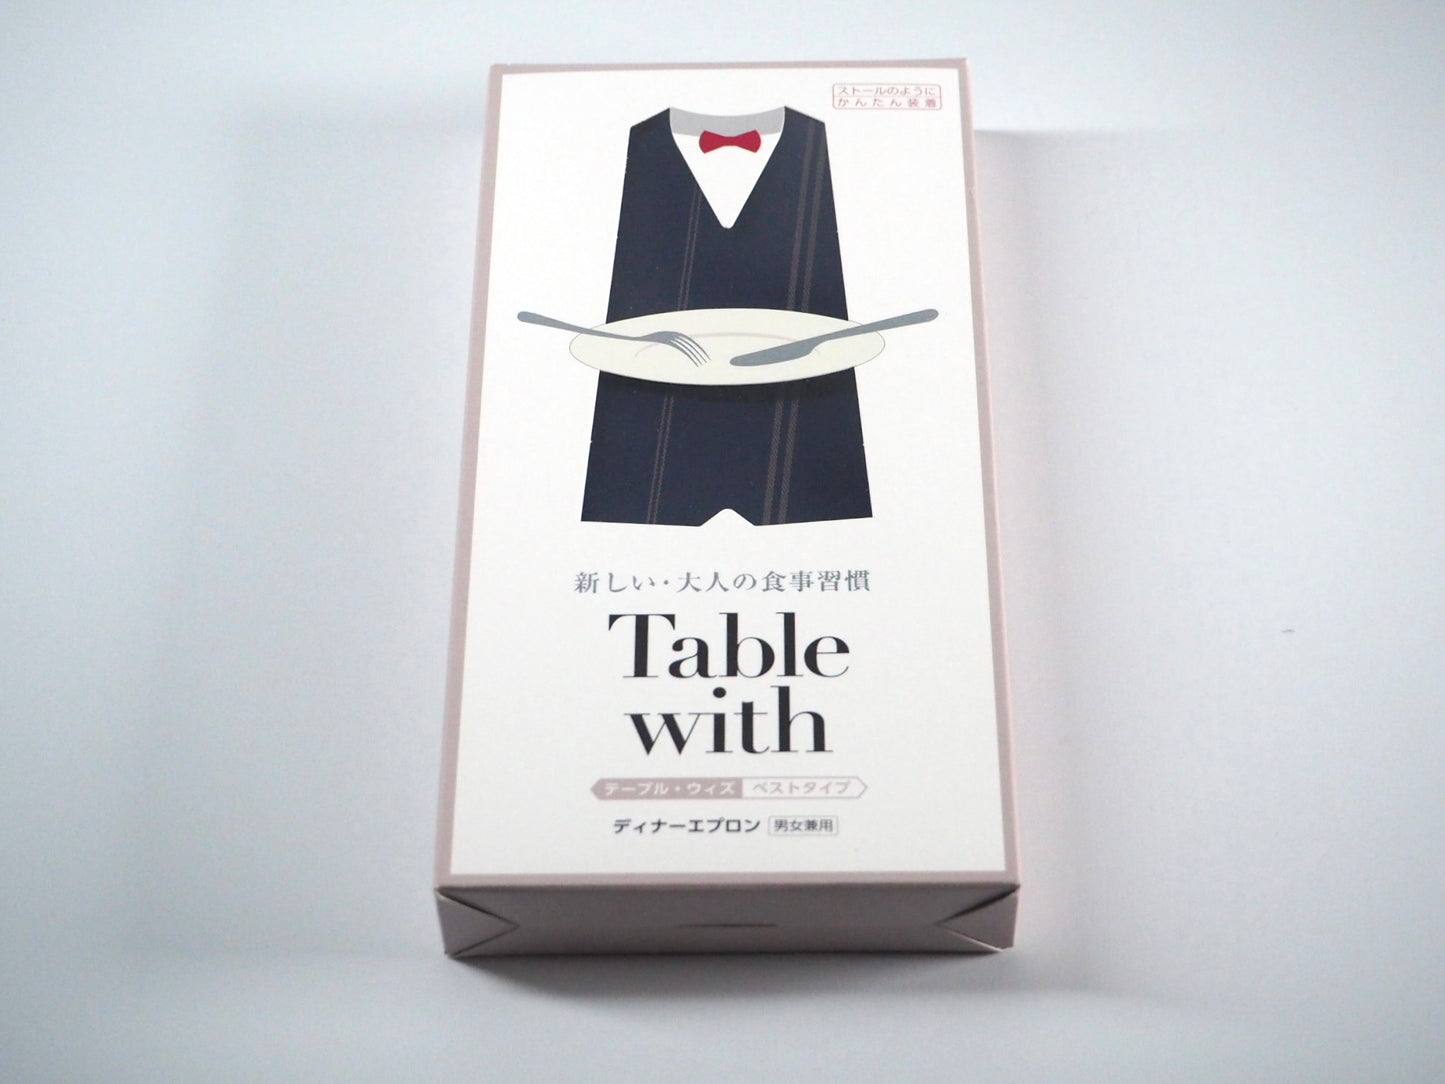 「Table with」 ベストタイプ